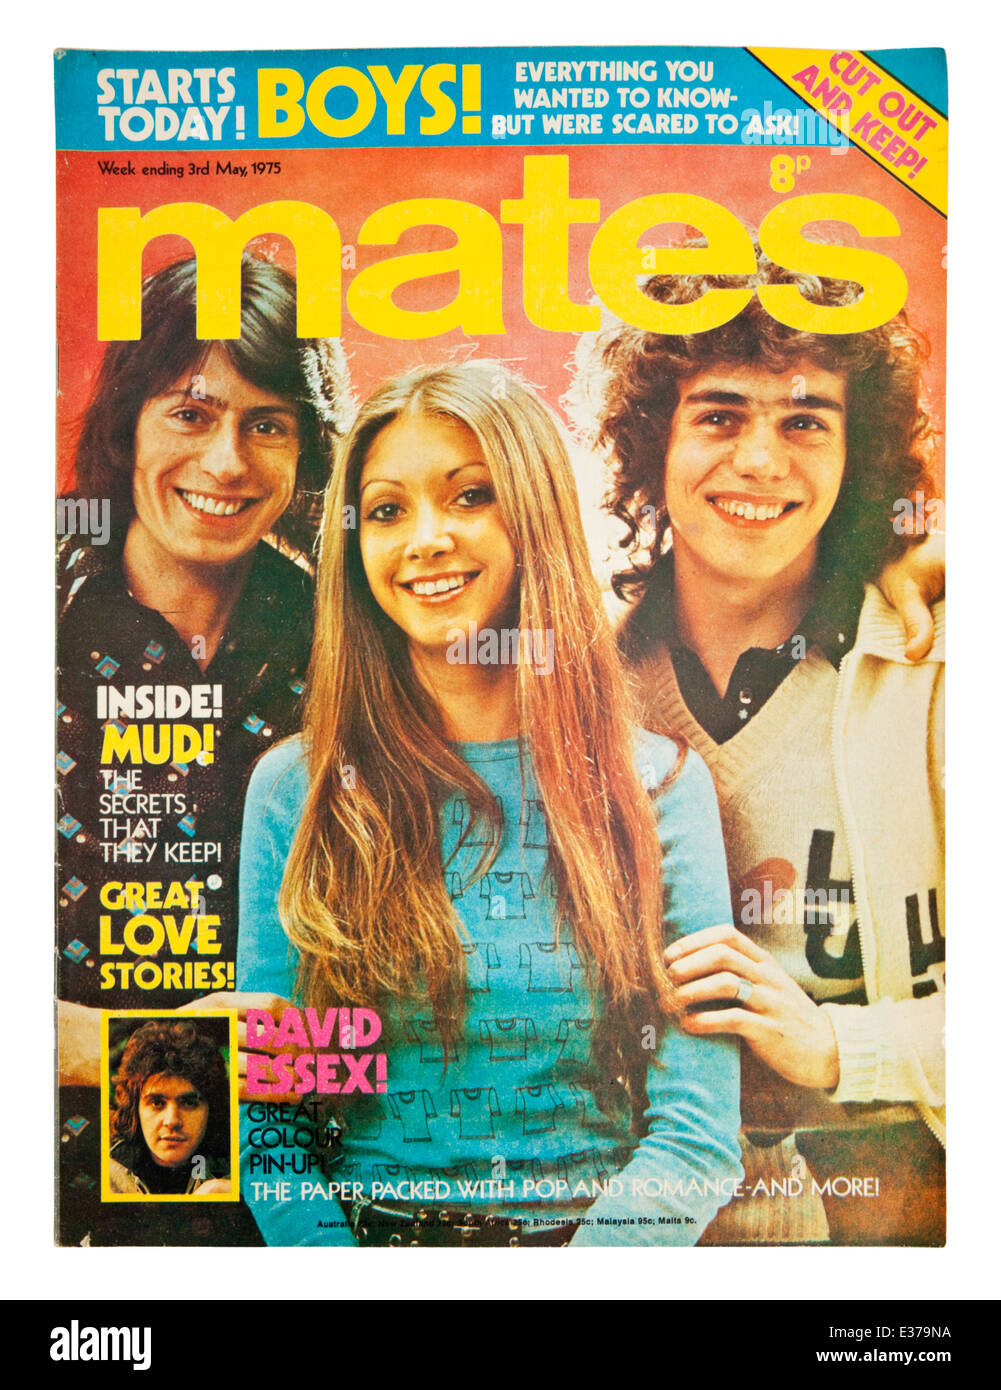 Vintage Kopie des "Mates", eine beliebte britische wöchentliche jugendlich Zeitschrift von Mitte der 1970er Jahre. Dies ist die 3. Mai 1975 Ausgabe. Stockfoto